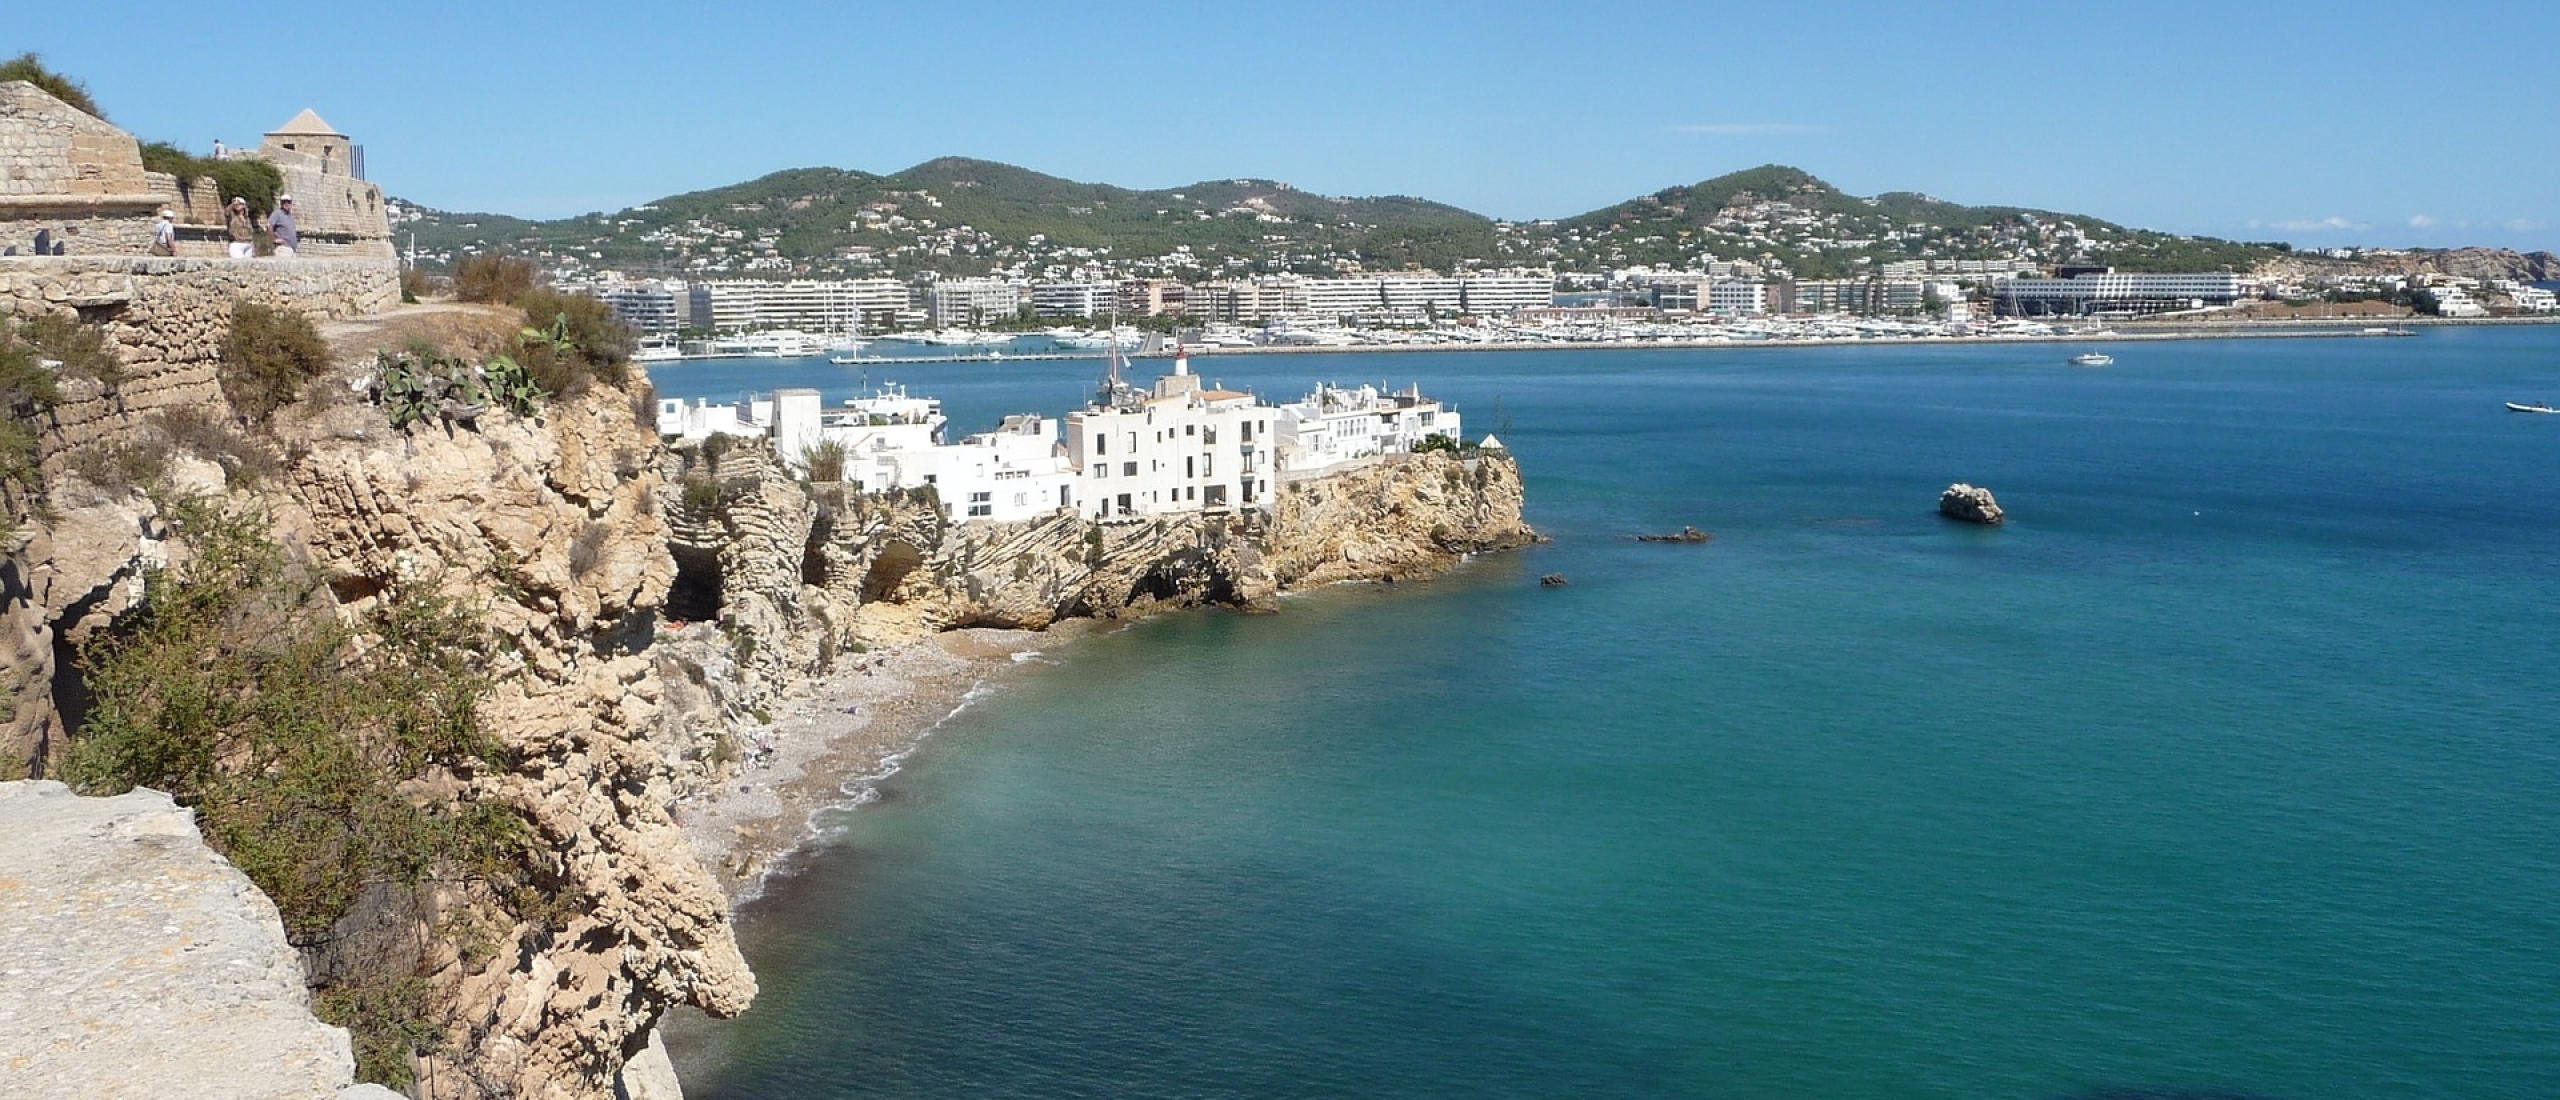 Mooiste plekken van Ibiza: 11 tips die je niet wil missen